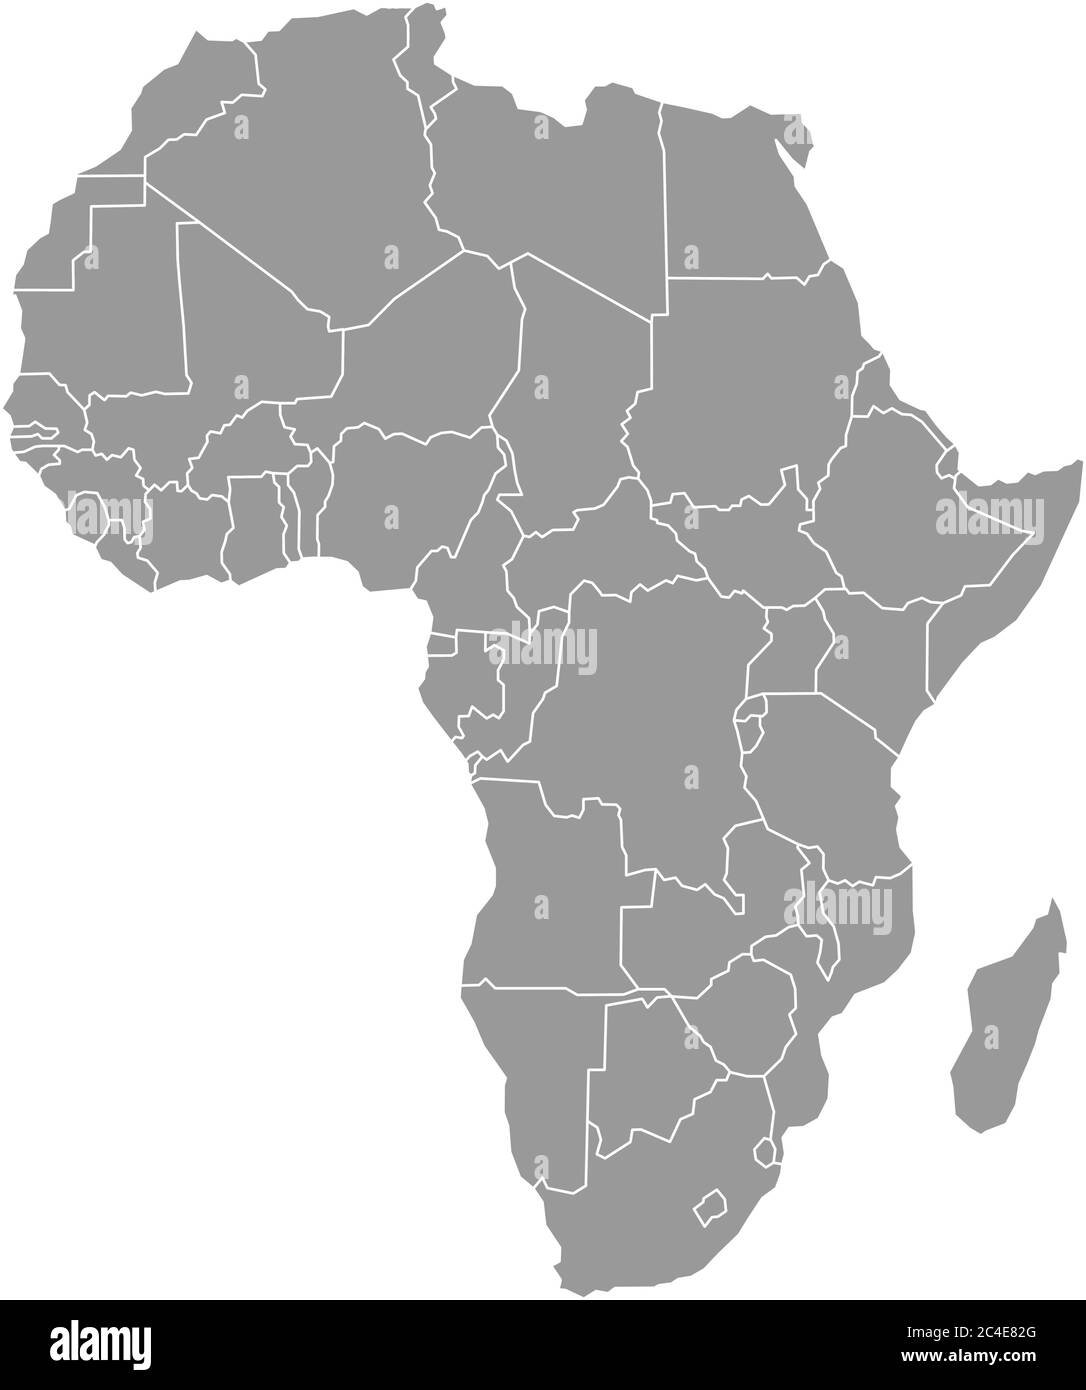 Einfache flache graue Karte des afrikanischen Kontinents mit isolierten nationalen Grenzen auf weißem Hintergrund. Vektorgrafik. Stock Vektor